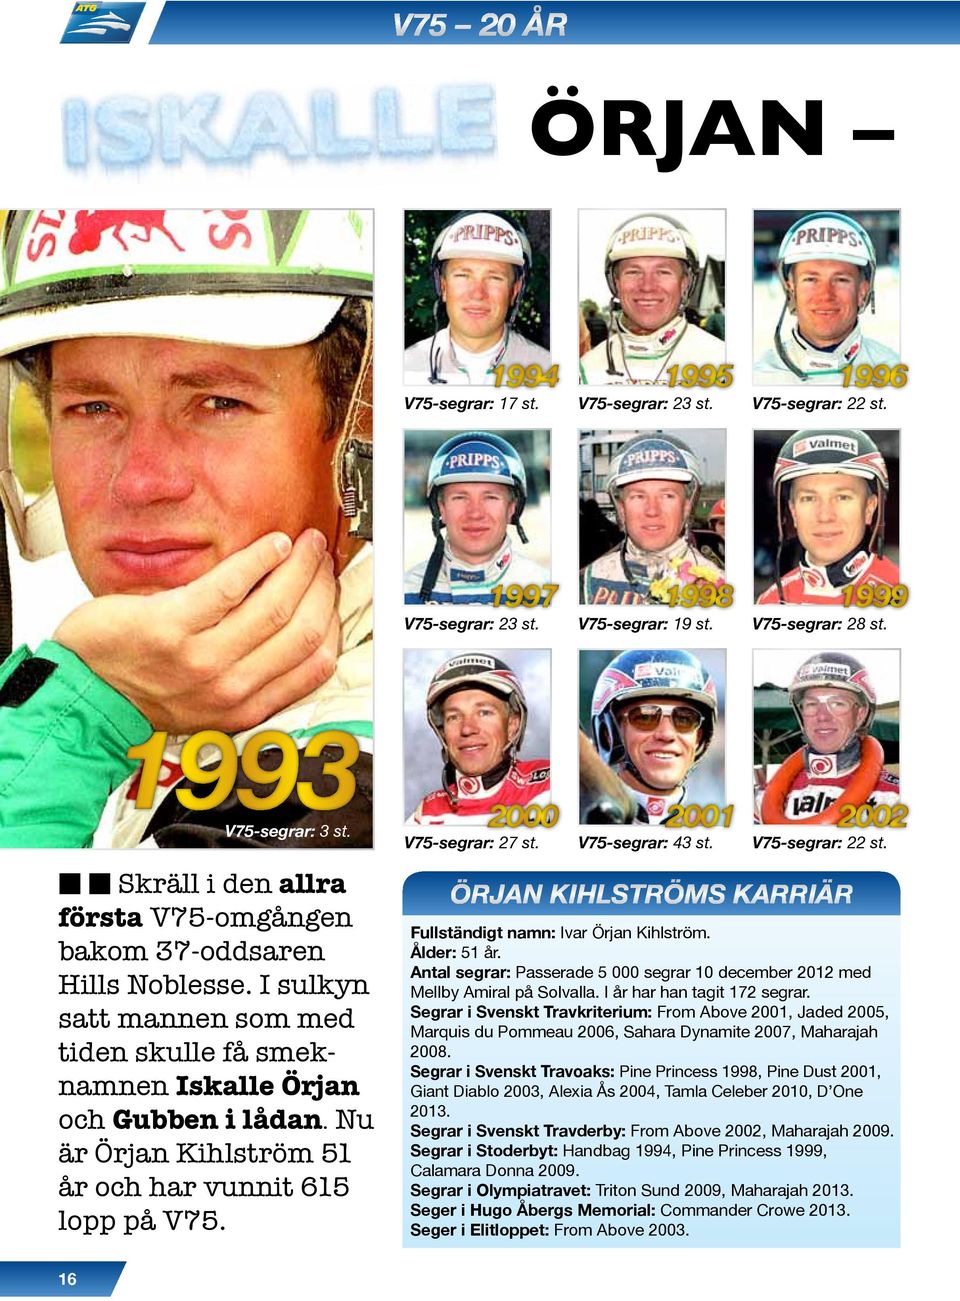 Nu är Örjan Kihlström 51 år och har vunnit 615 lopp på V75. V75-segrar: 27 st. V75-segrar: 43 st. V75-segrar: 22 st. Örjan kihlströms karriär Fullständigt namn: Ivar Örjan Kihlström. Ålder: 51 år.